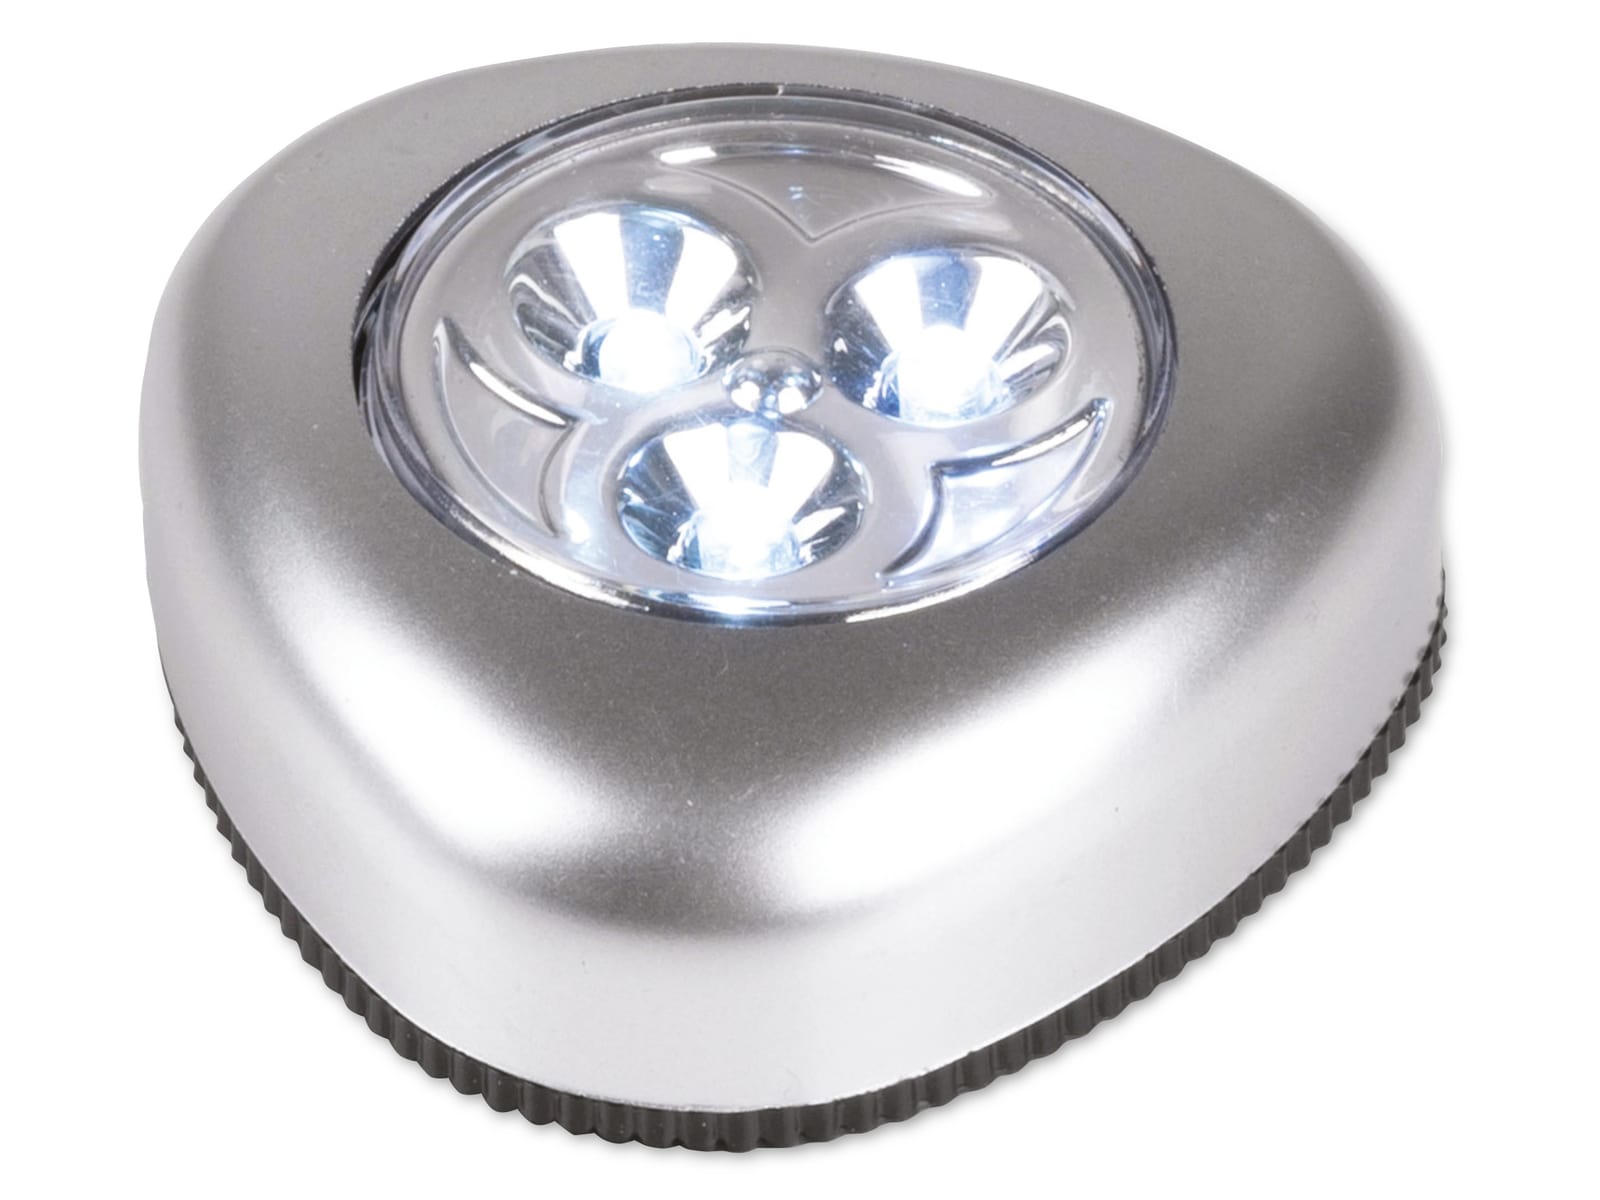 GRUNDIG LED-Schranklicht 5 Stück, 3 LEDs, batteriebetrieben online